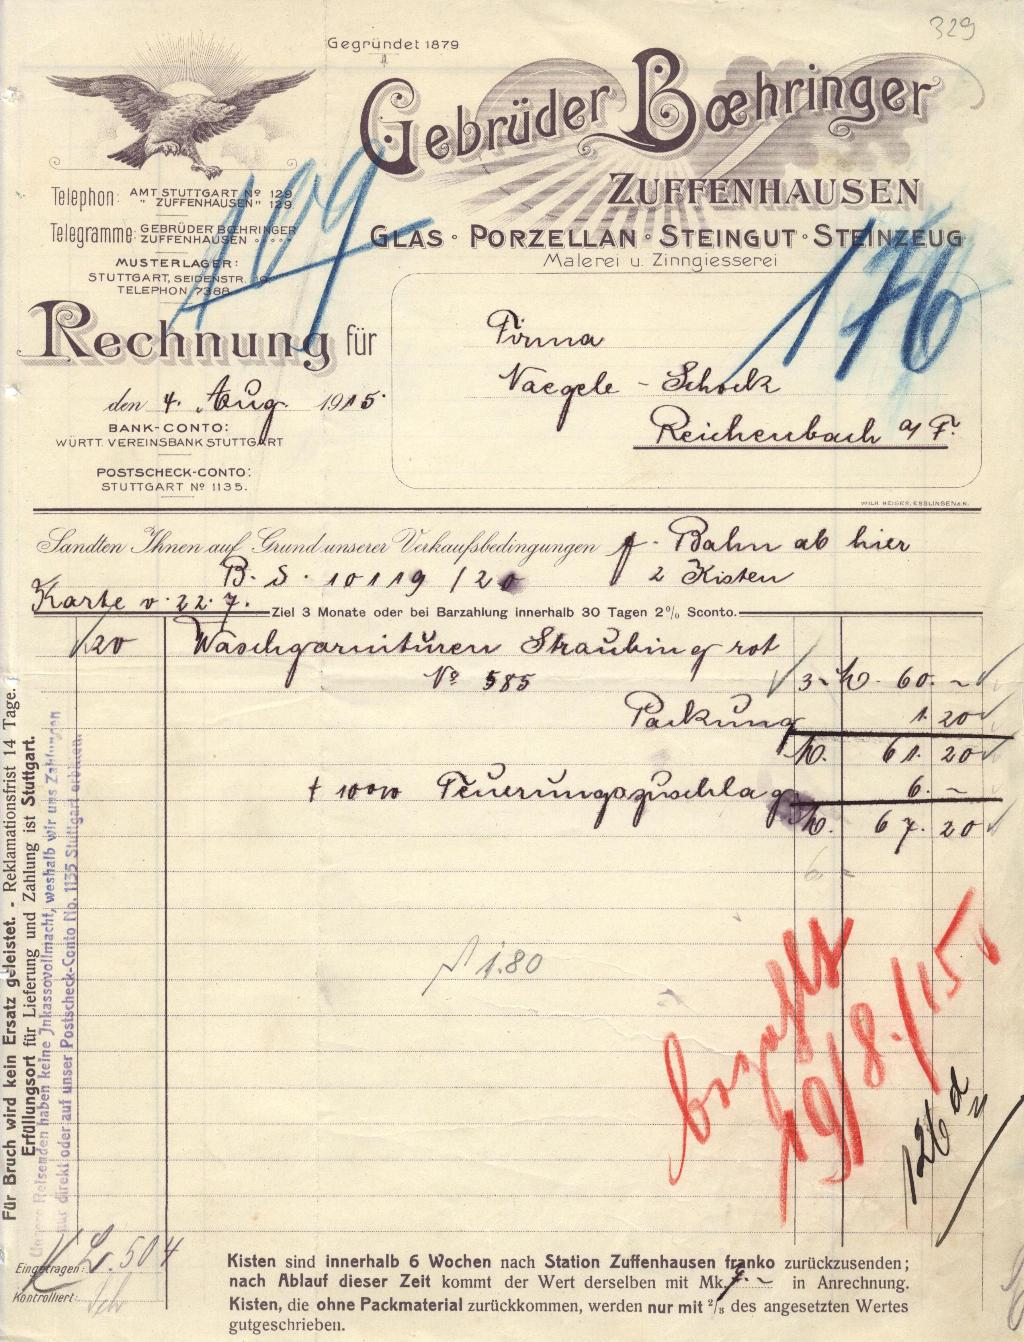 "Gebr. Boehringer 1915"